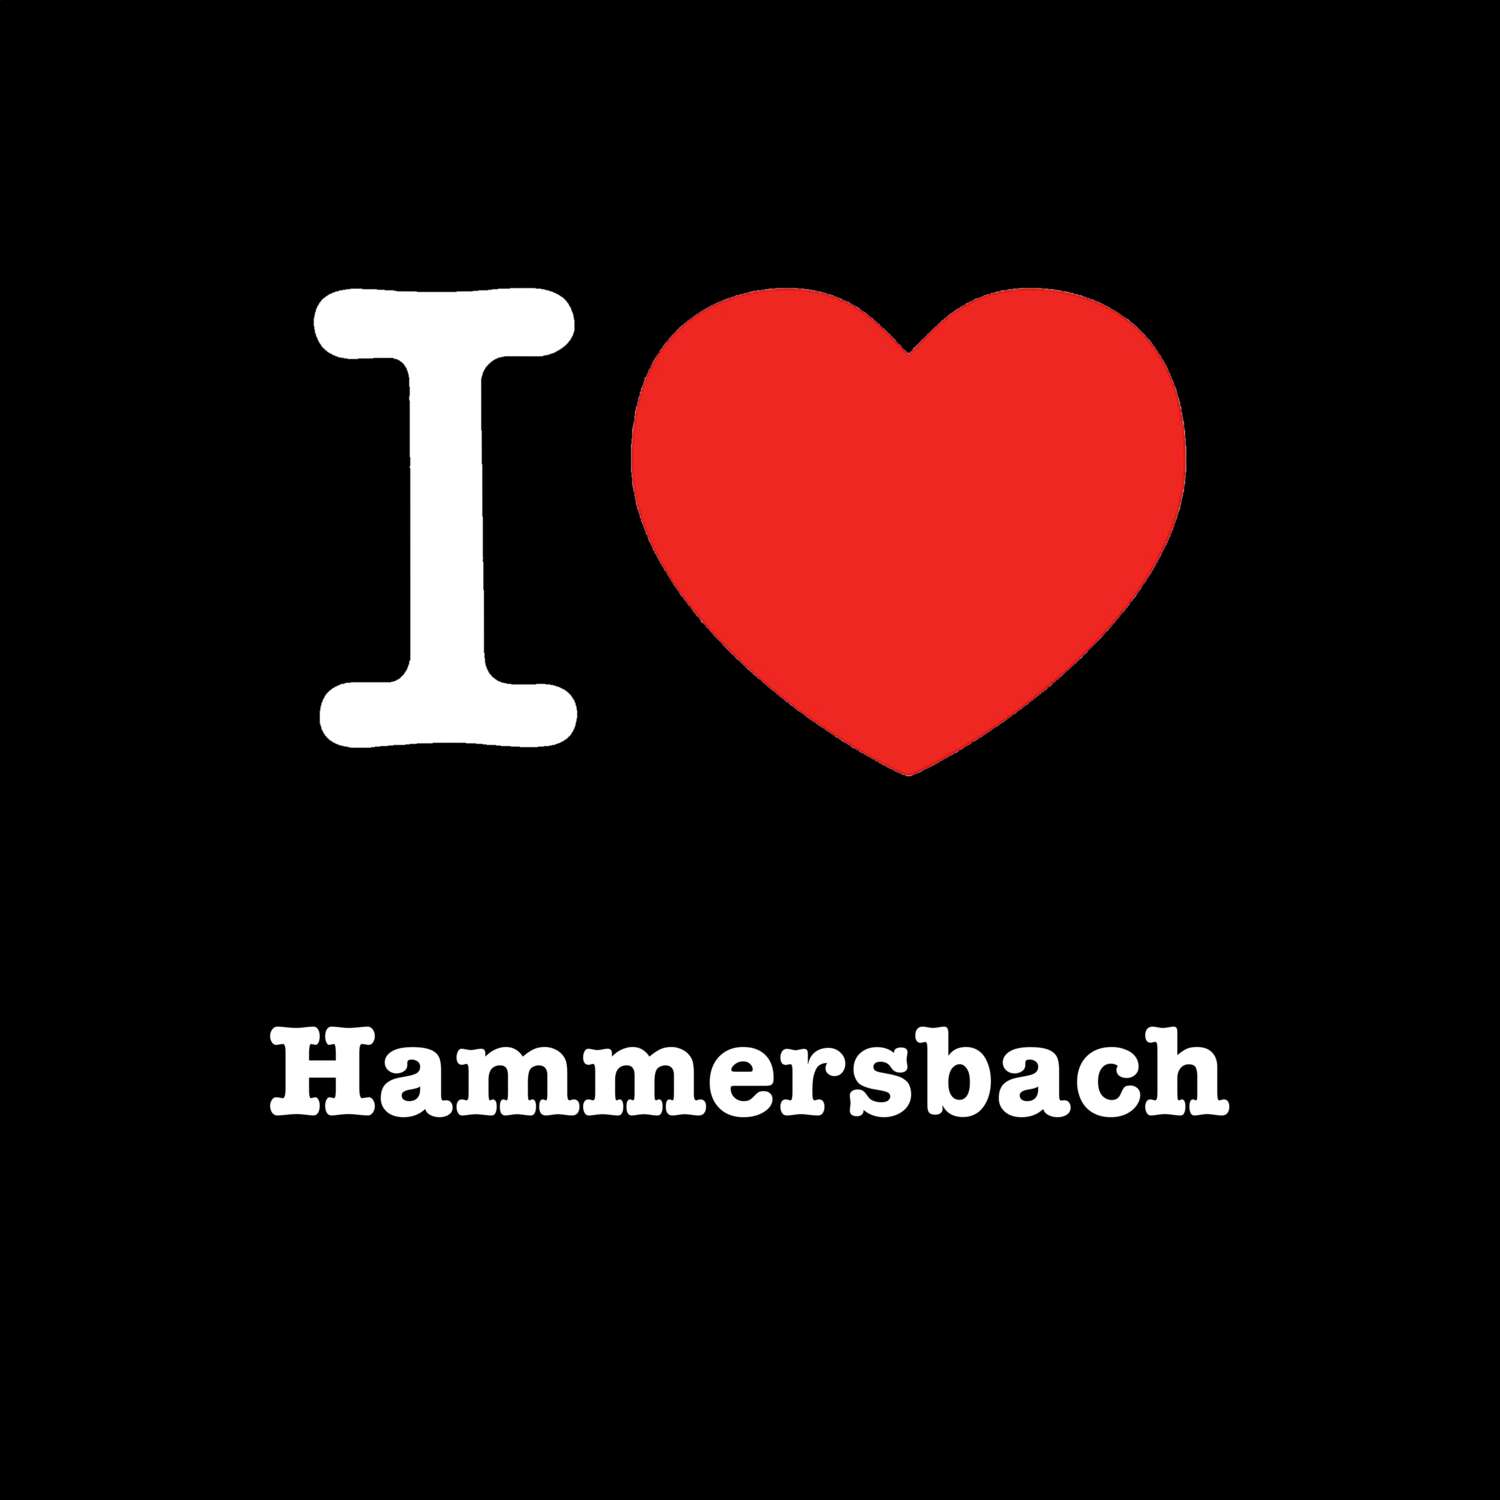 Hammersbach T-Shirt »I love«